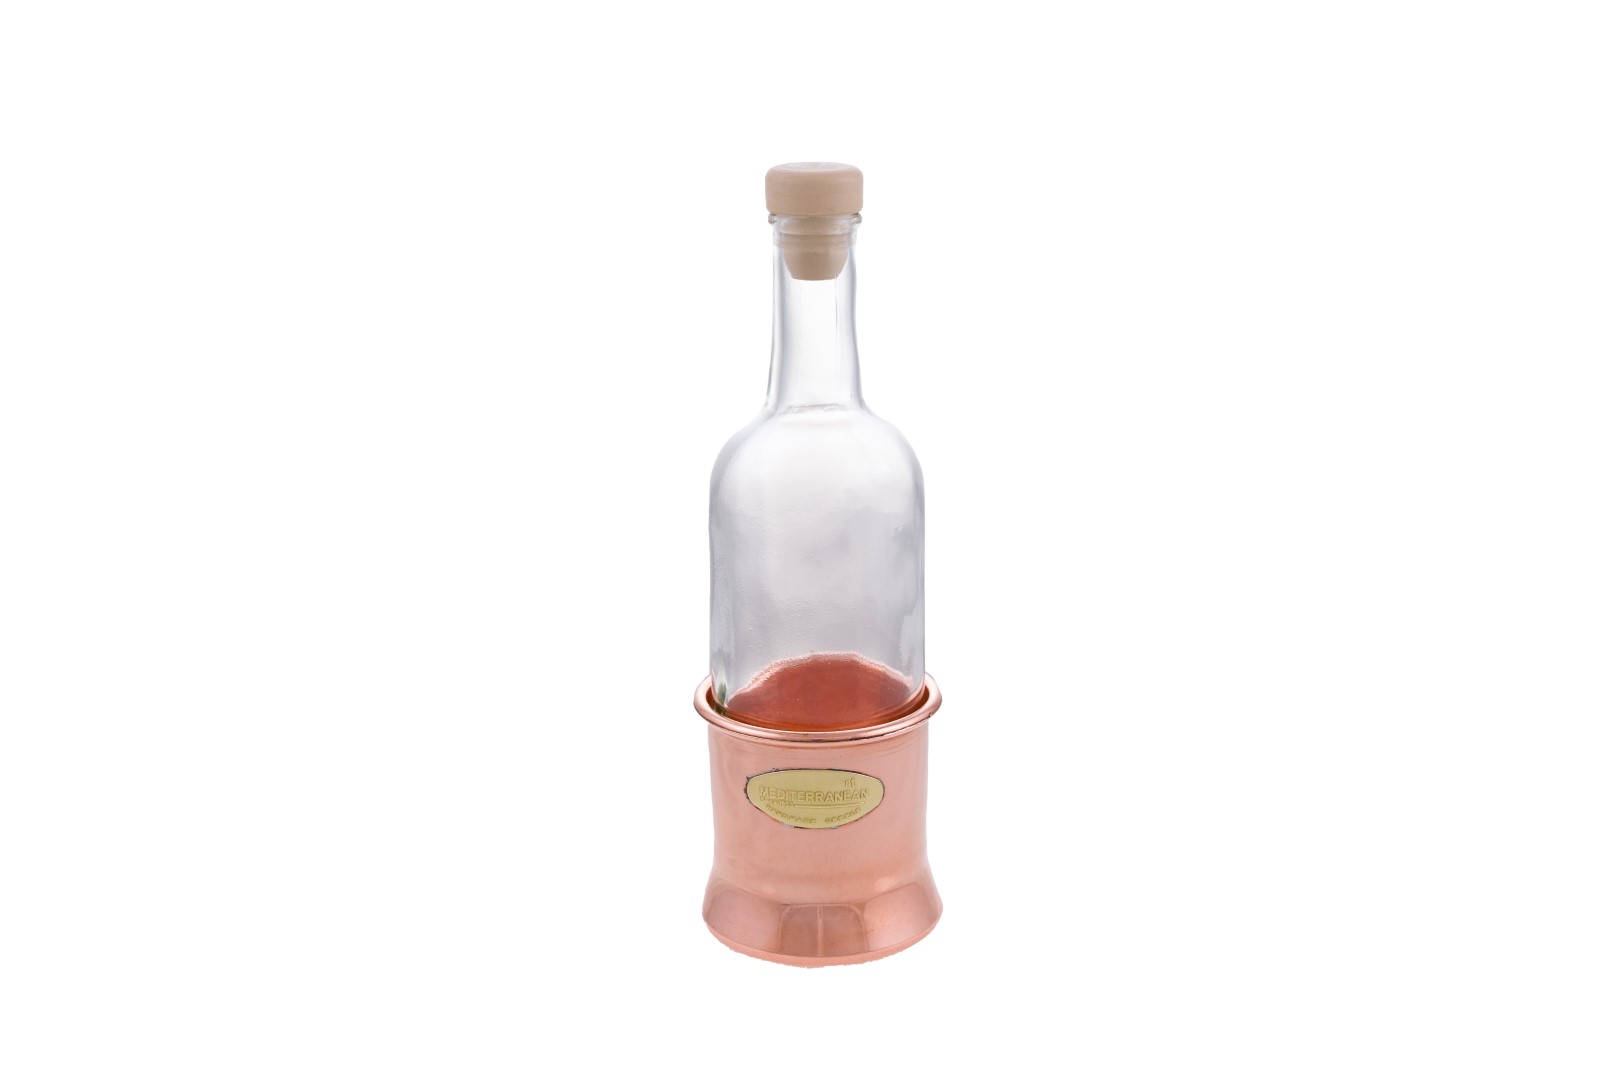 Copper Items - Copper Alcohol Bottle